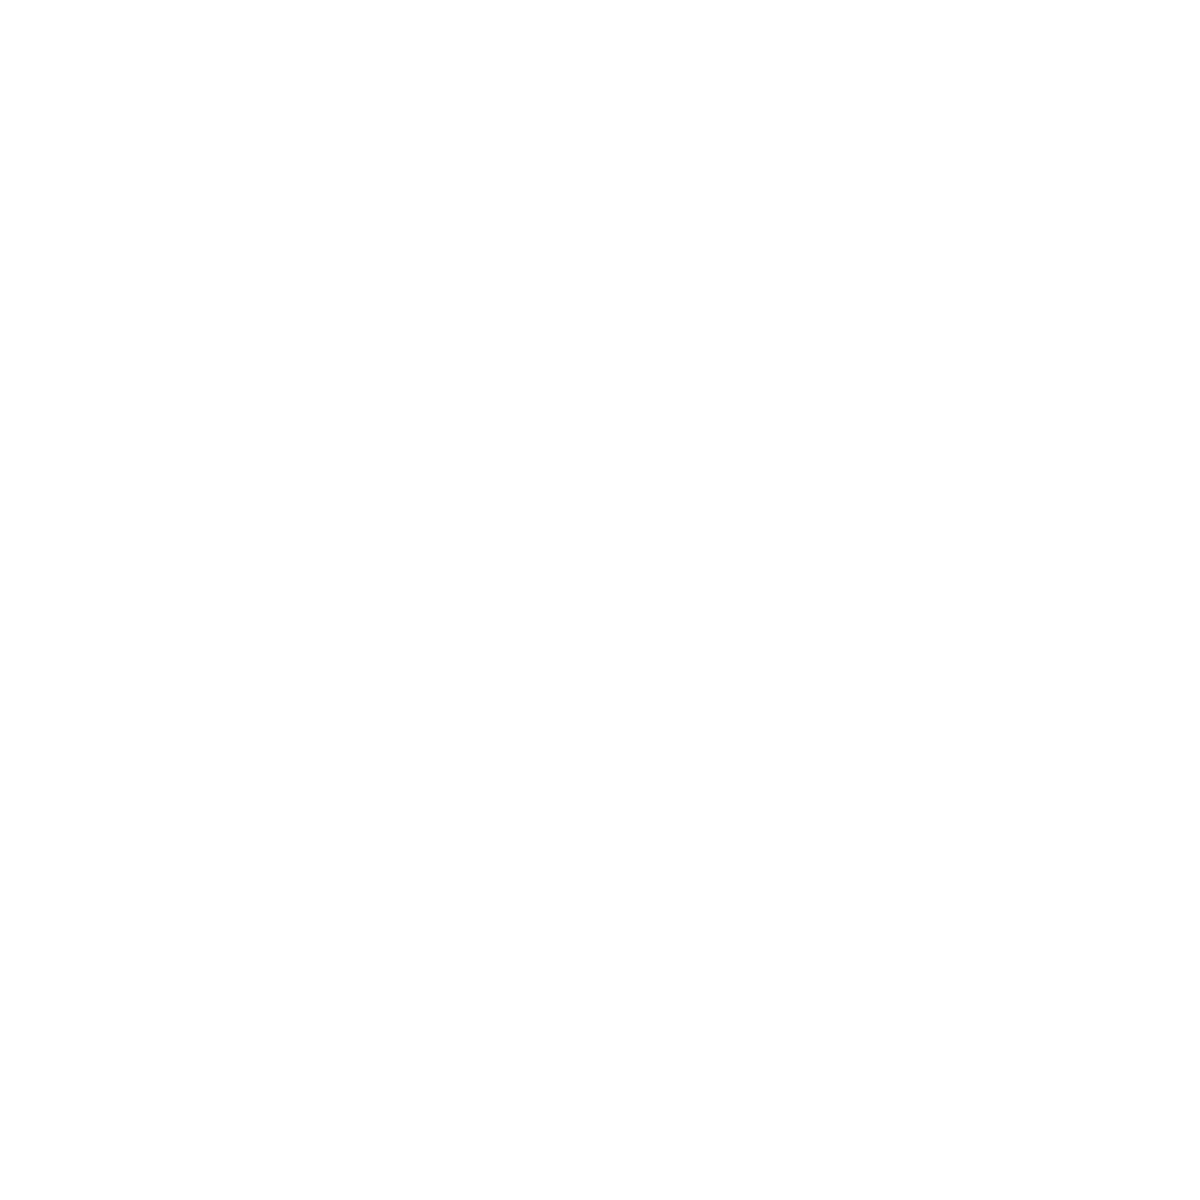 Kairos Coffee House